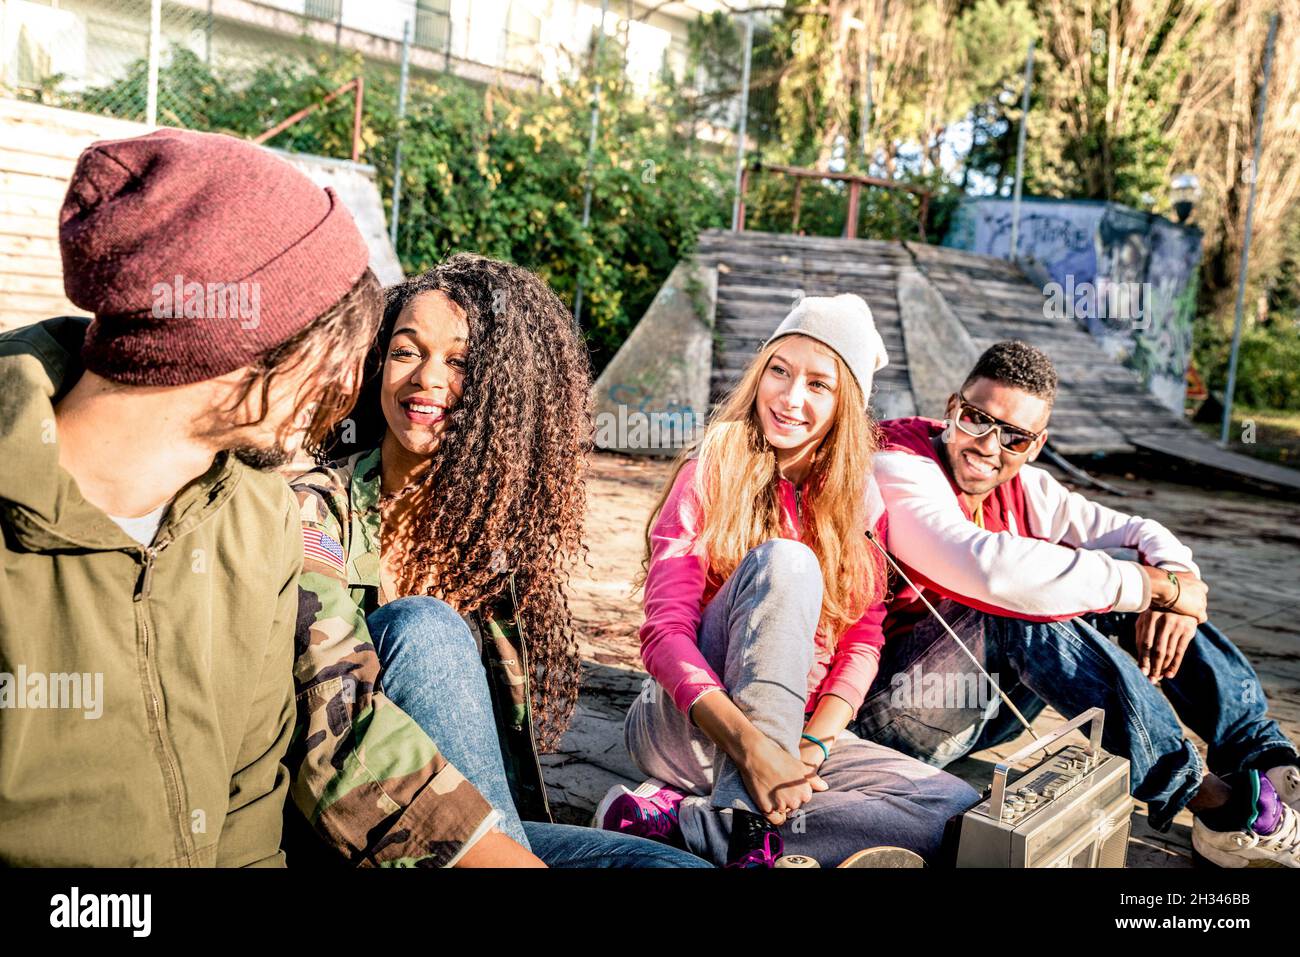 Groupe d'amis de style urbain ayant le plaisir de passer du temps à skate bmx Park - concept d'amitié de jeunesse avec les gens ensemble en plein air Banque D'Images